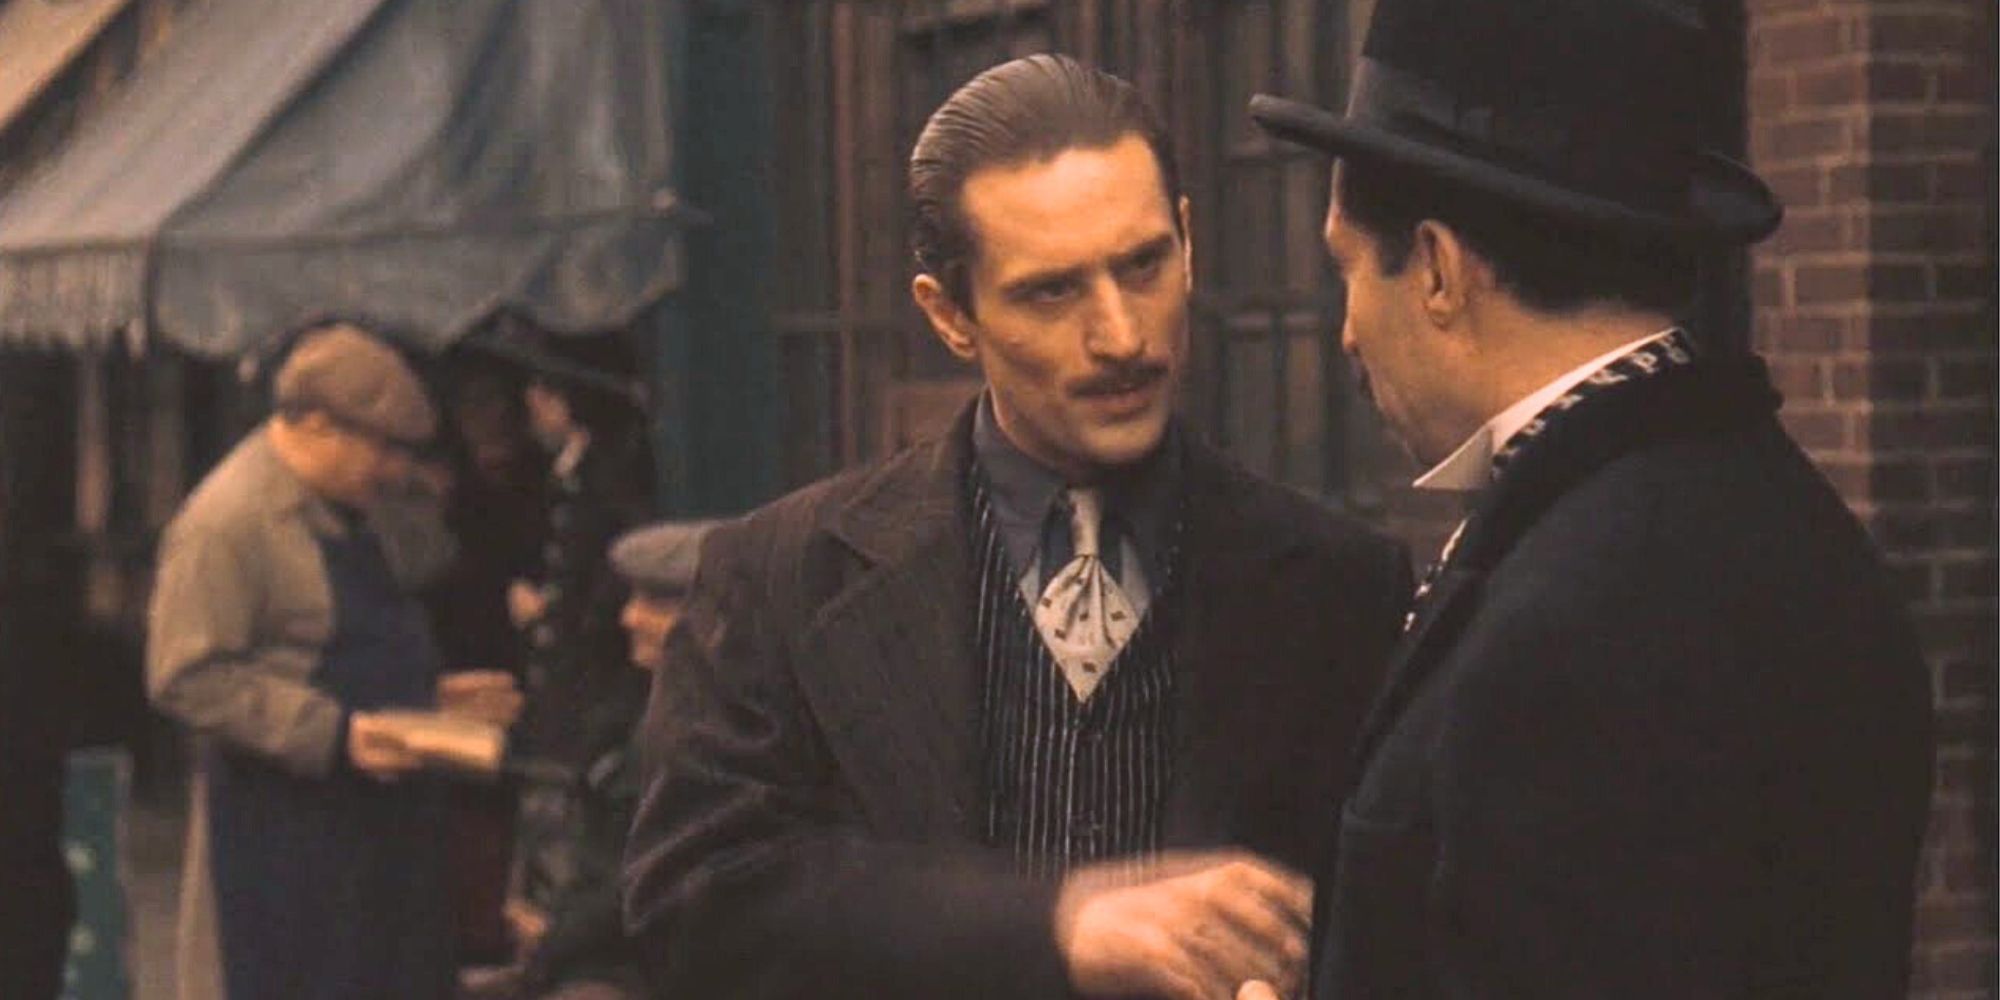 Robert De Niro speaking to a man in The Godfather: Part II (1974)